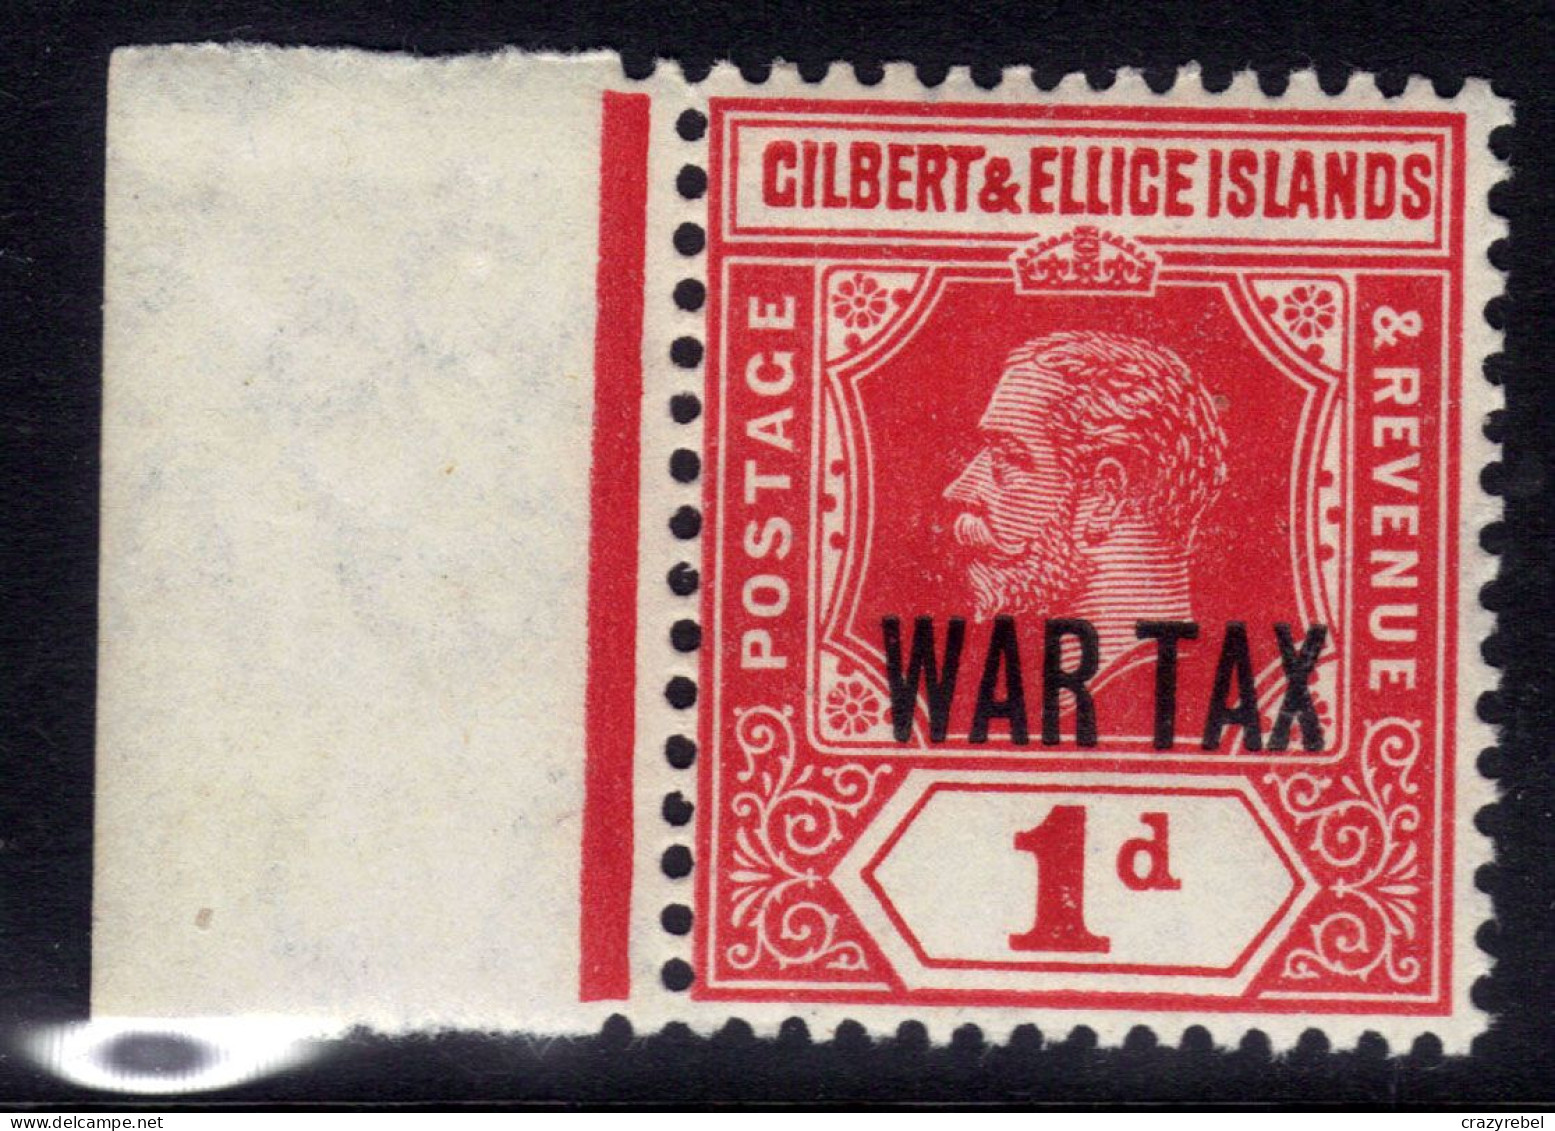 Gilbert & Ellice Isl 1918 KGV 1d Red Umm Ovpt WAR TAX SG 26 ( C200 ) - Gilbert & Ellice Islands (...-1979)